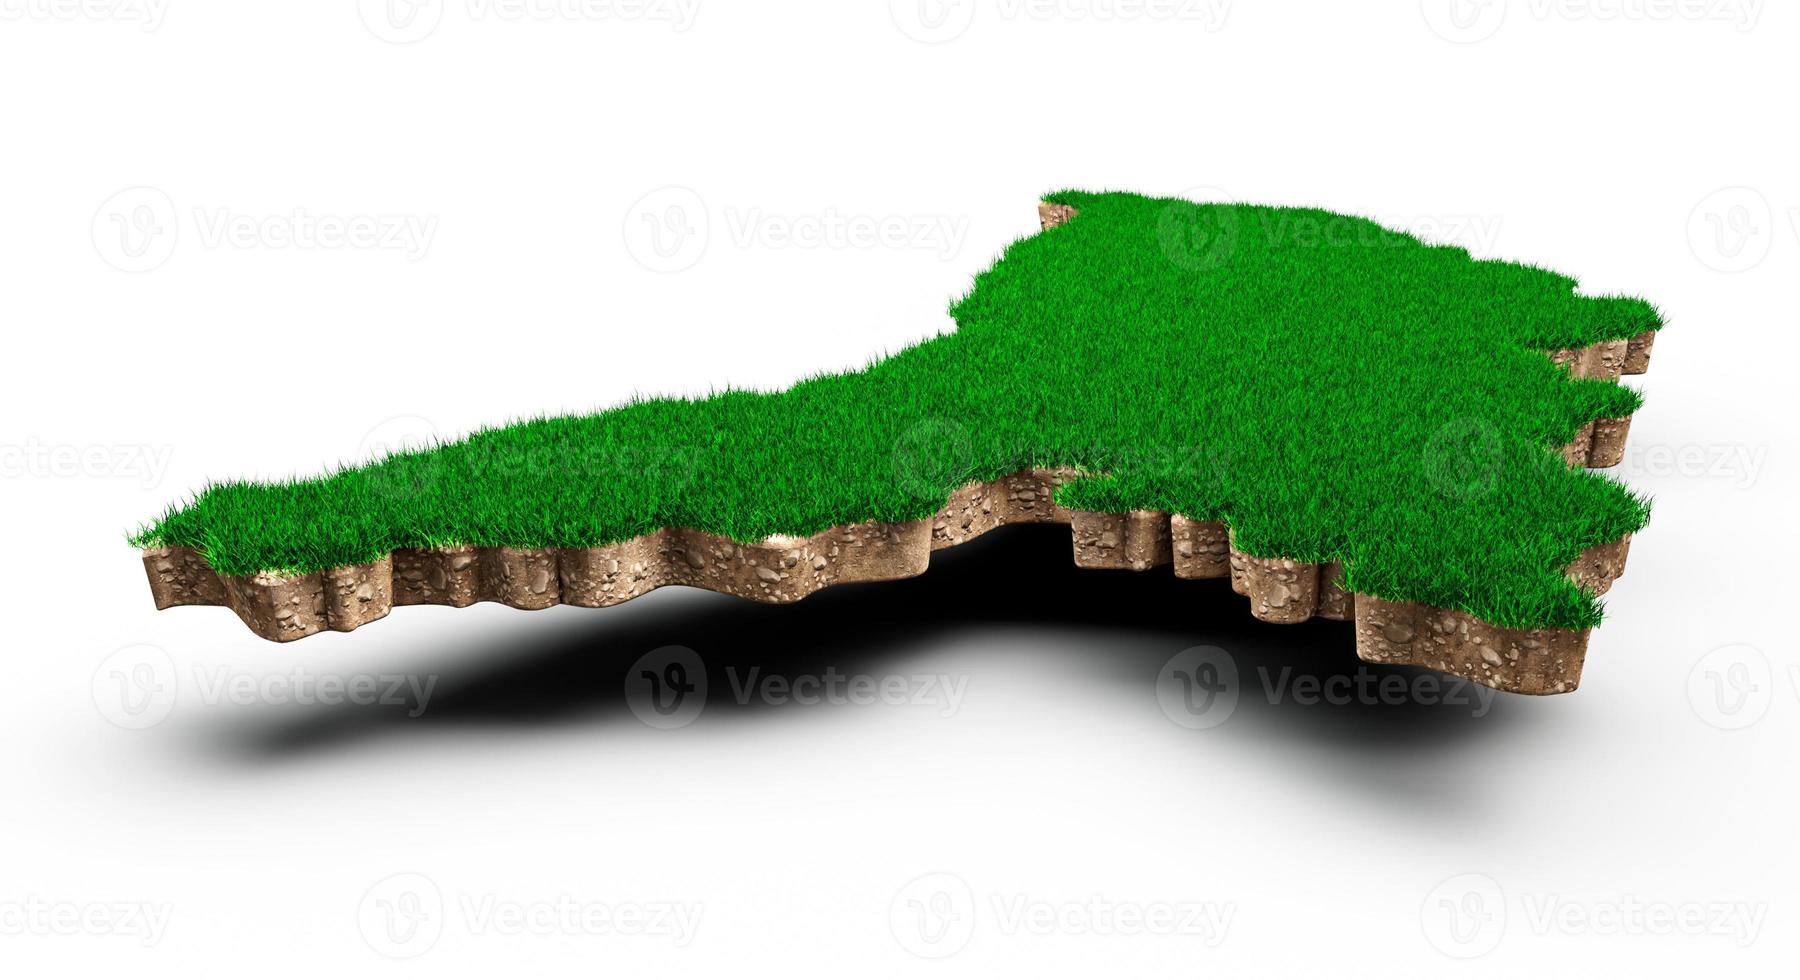 carte de la moldavie coupe transversale de la géologie des terres du sol avec de l'herbe verte et de la texture du sol rocheux illustration 3d photo